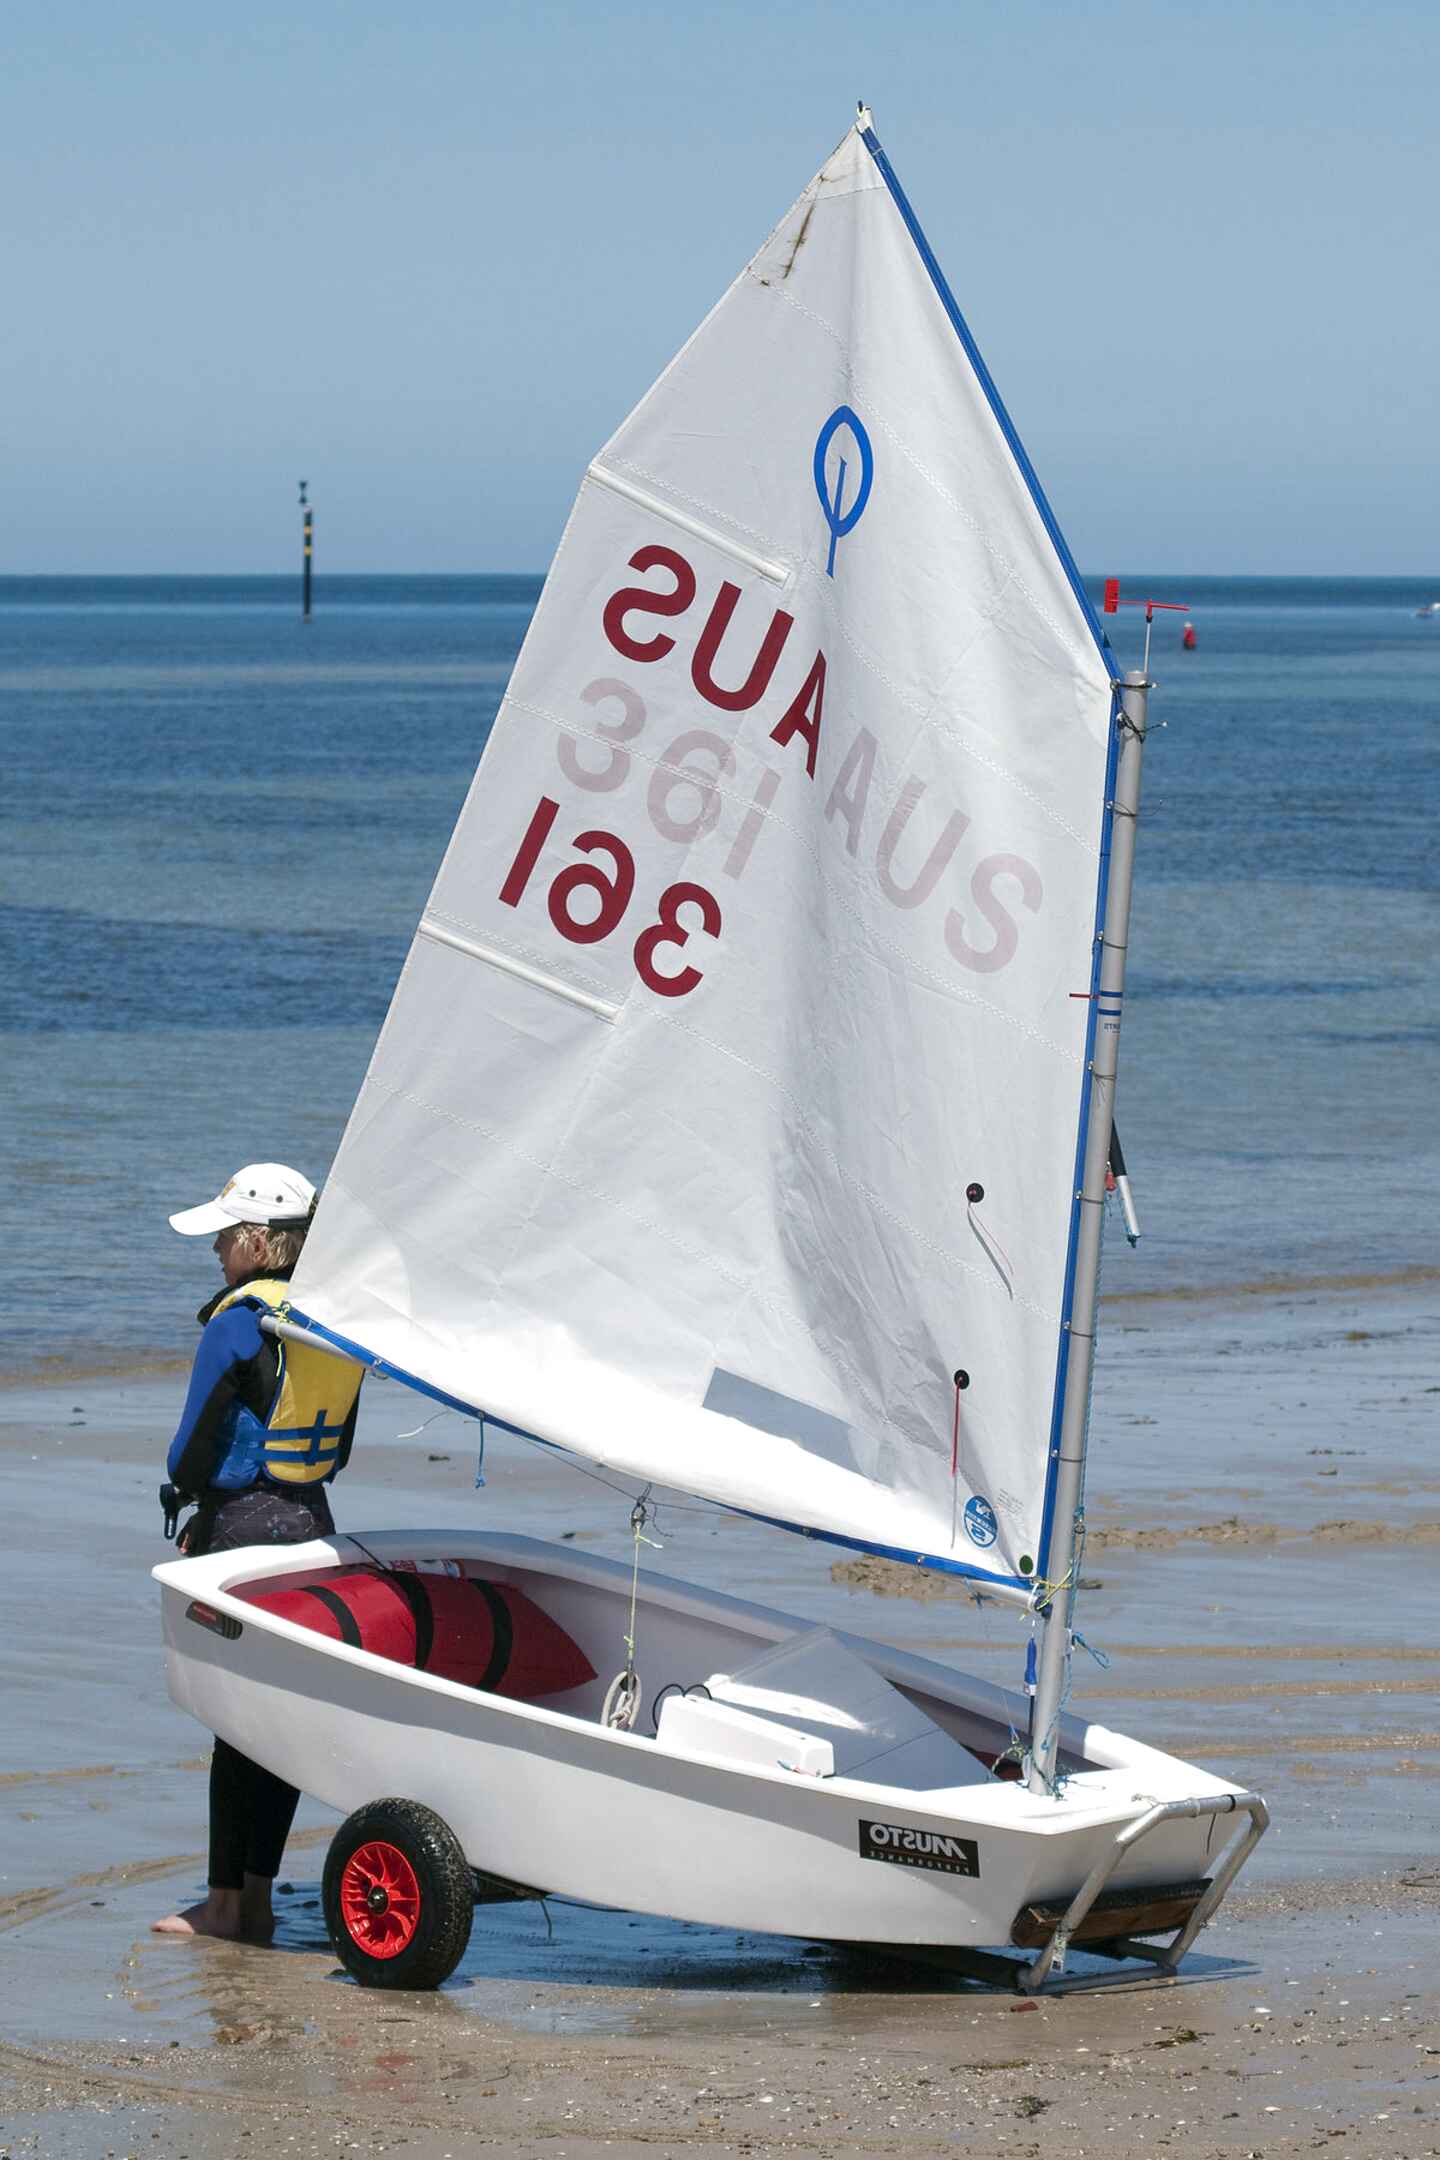 used optimist sailboat for sale craigslist